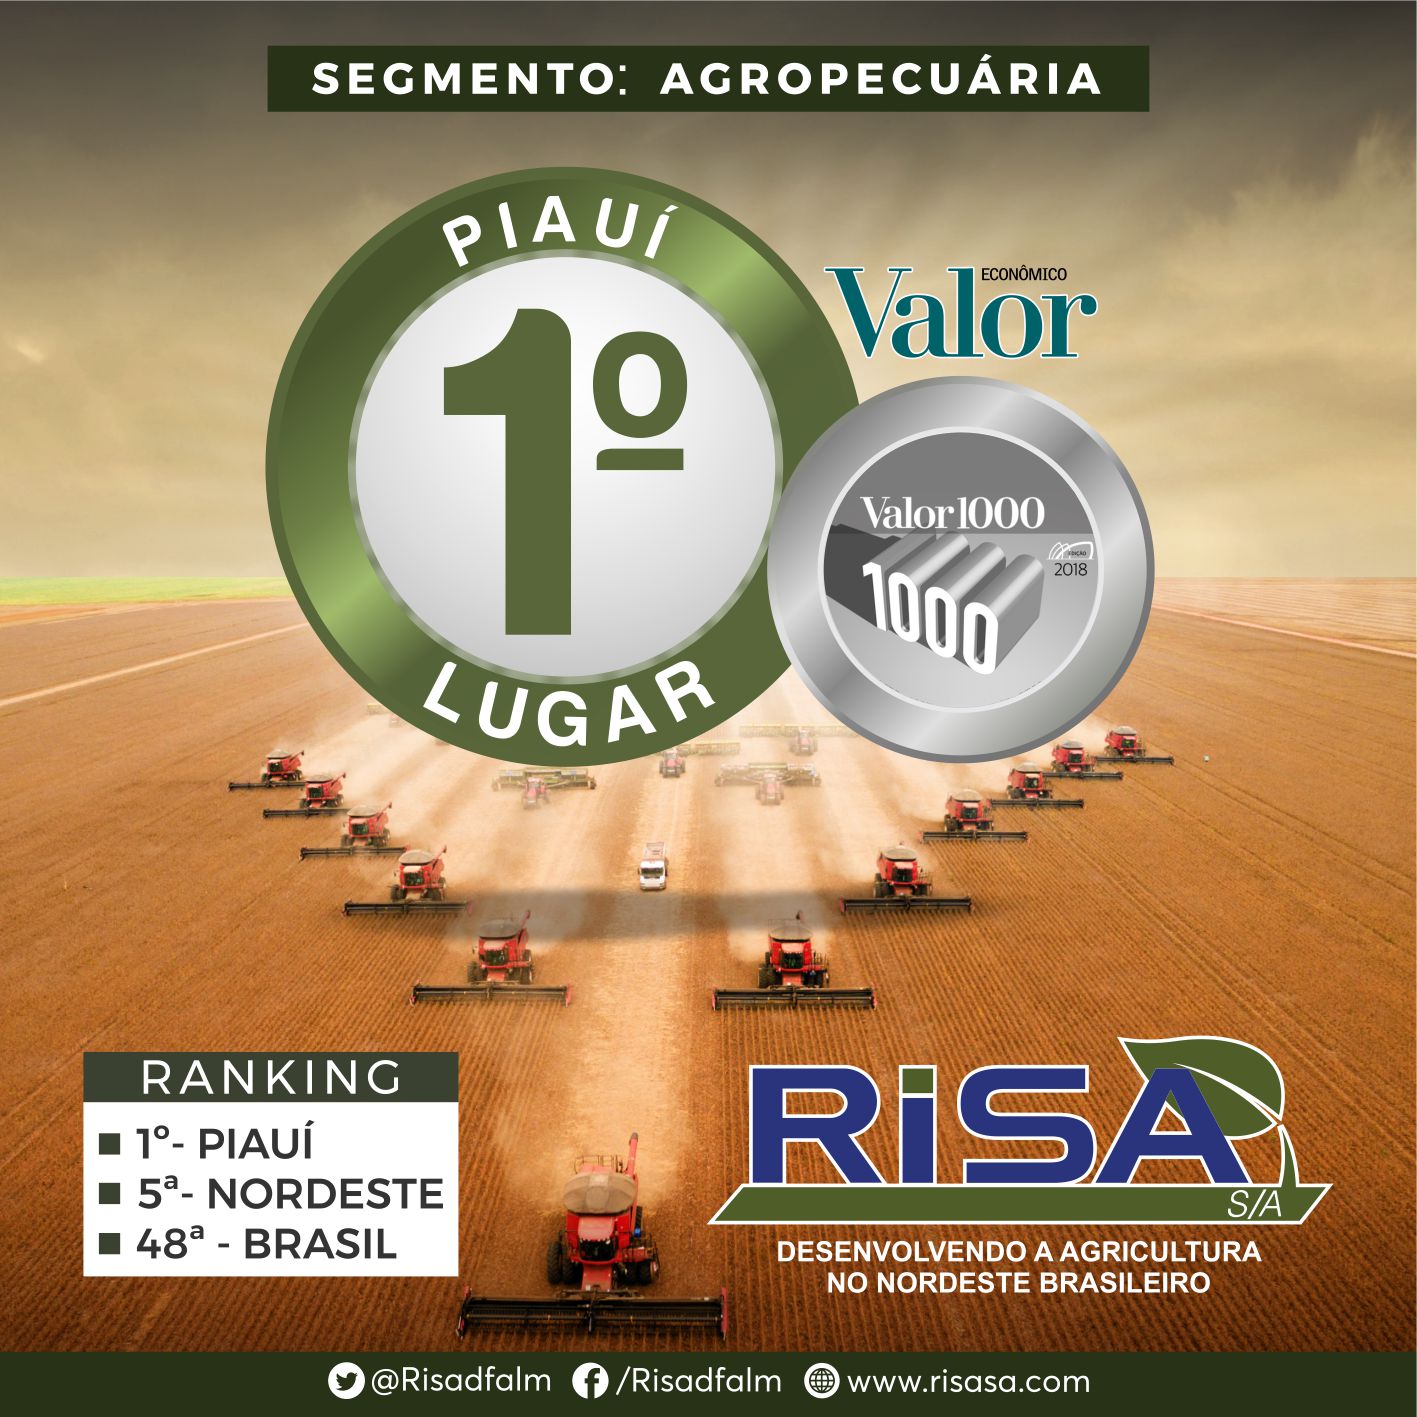 RISA S/A conquista o certificado Valor 1000 da revista Valor Econômico, prêmio realizado em parceria com a FGV e Serasa Experian.